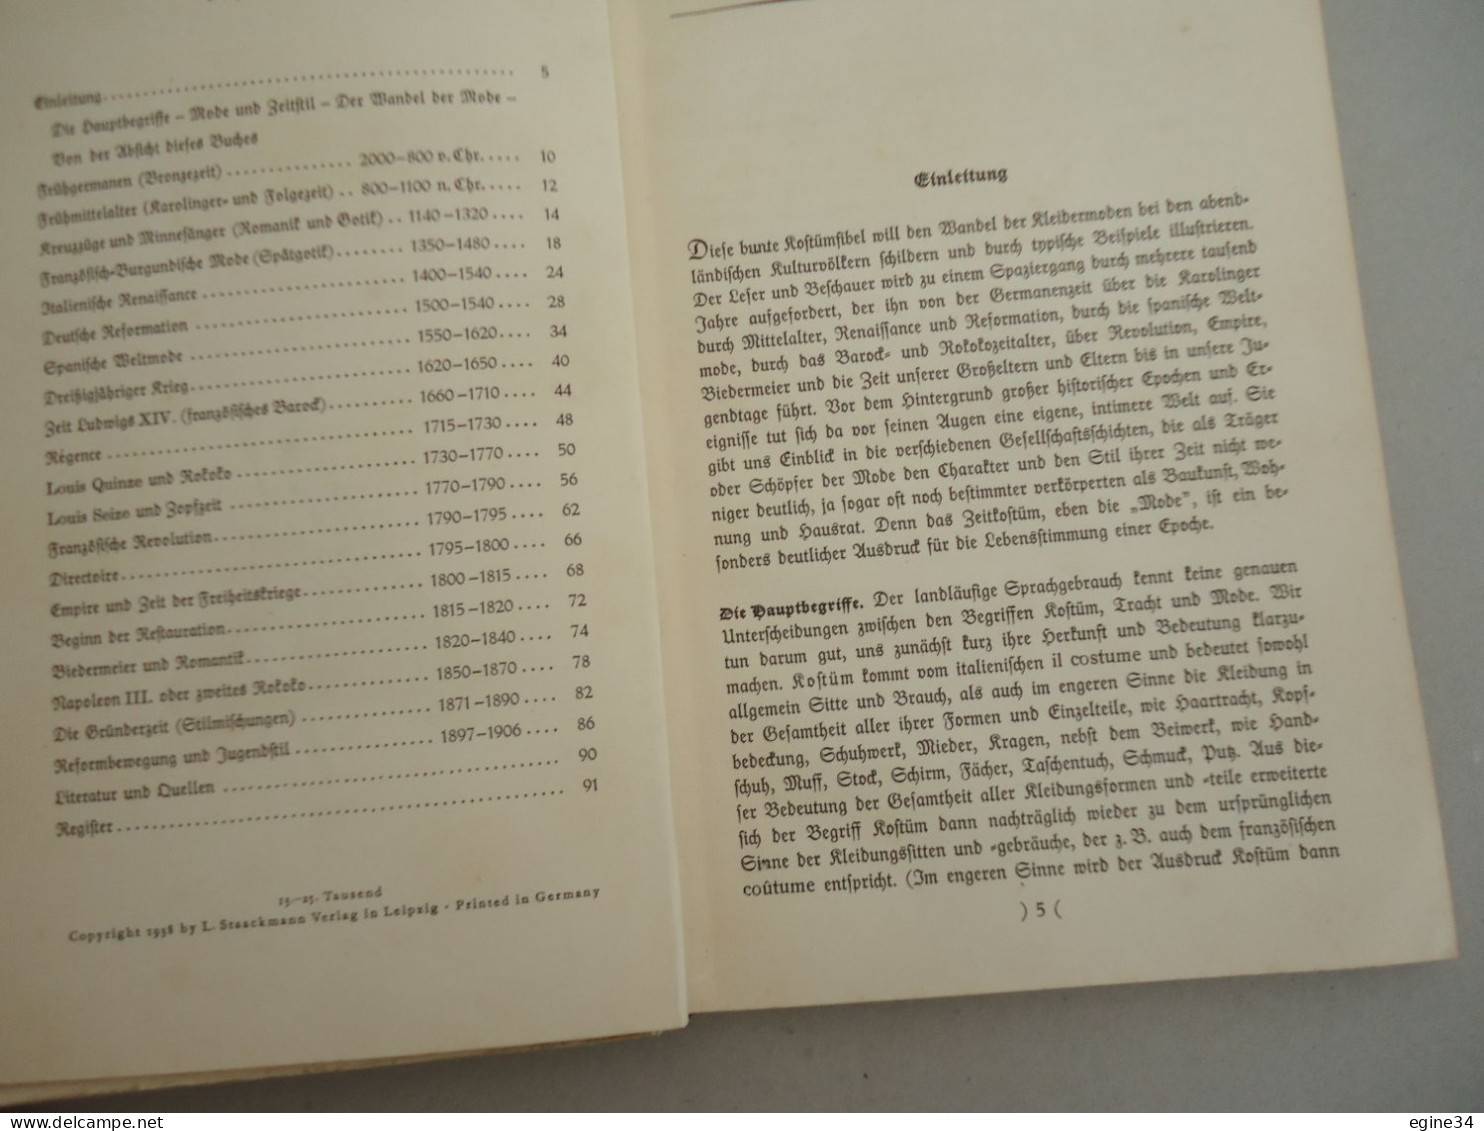 Bruhn  Fibel  Von Wolfgang And Bilder Von Helmut Skarbina - Koftum Und Mode - Farbabbildundem - 1938 - Old Books